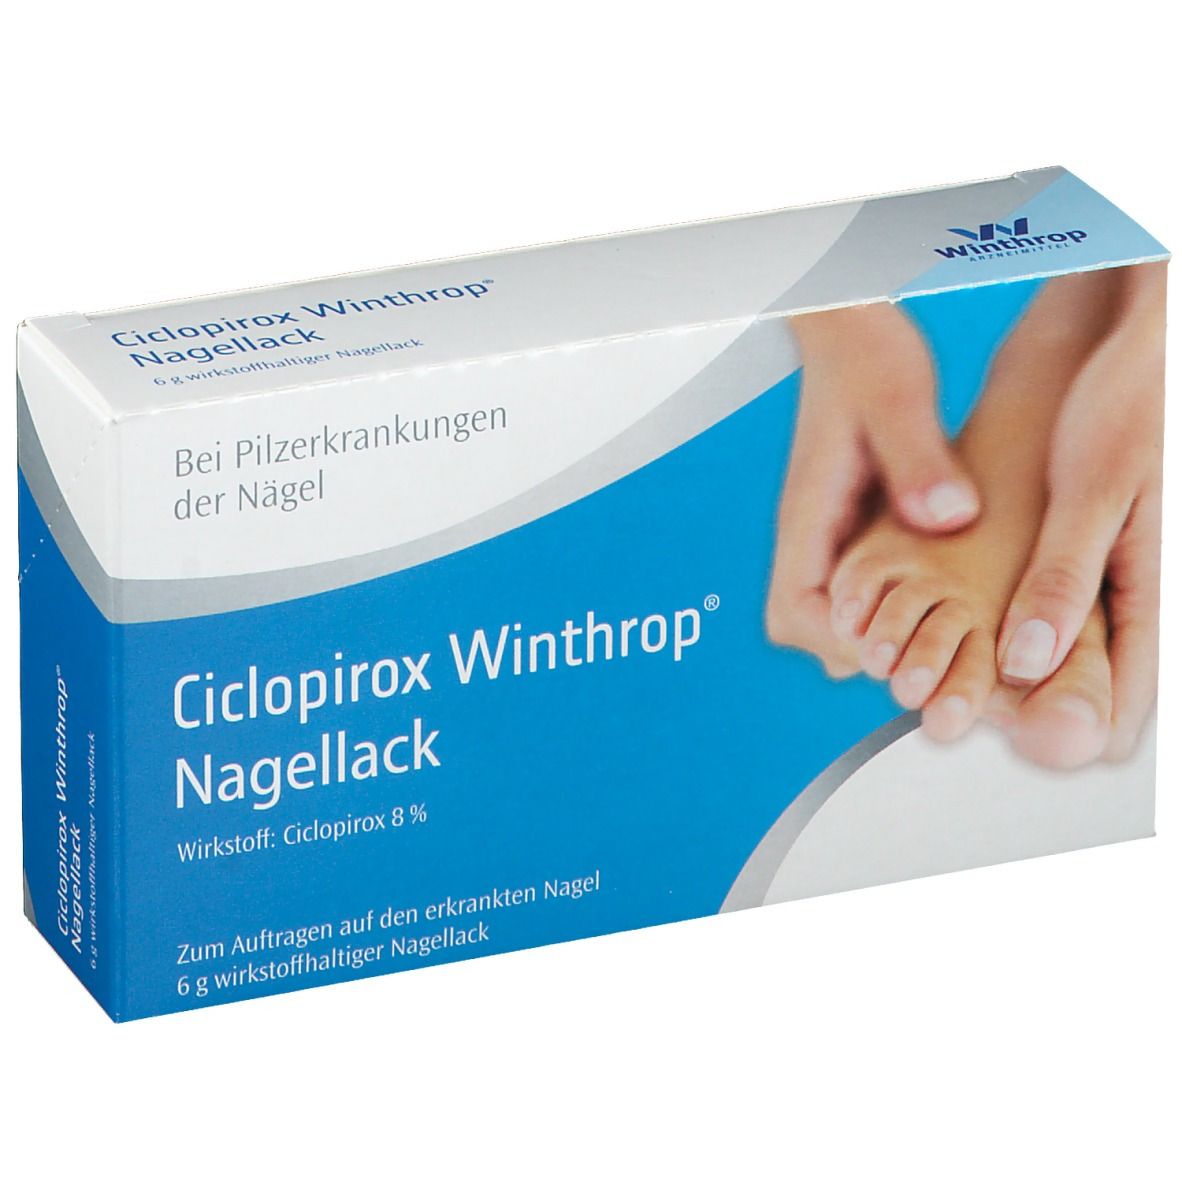 Ciclopirox Winthrop® Nagelpilz Nagellack